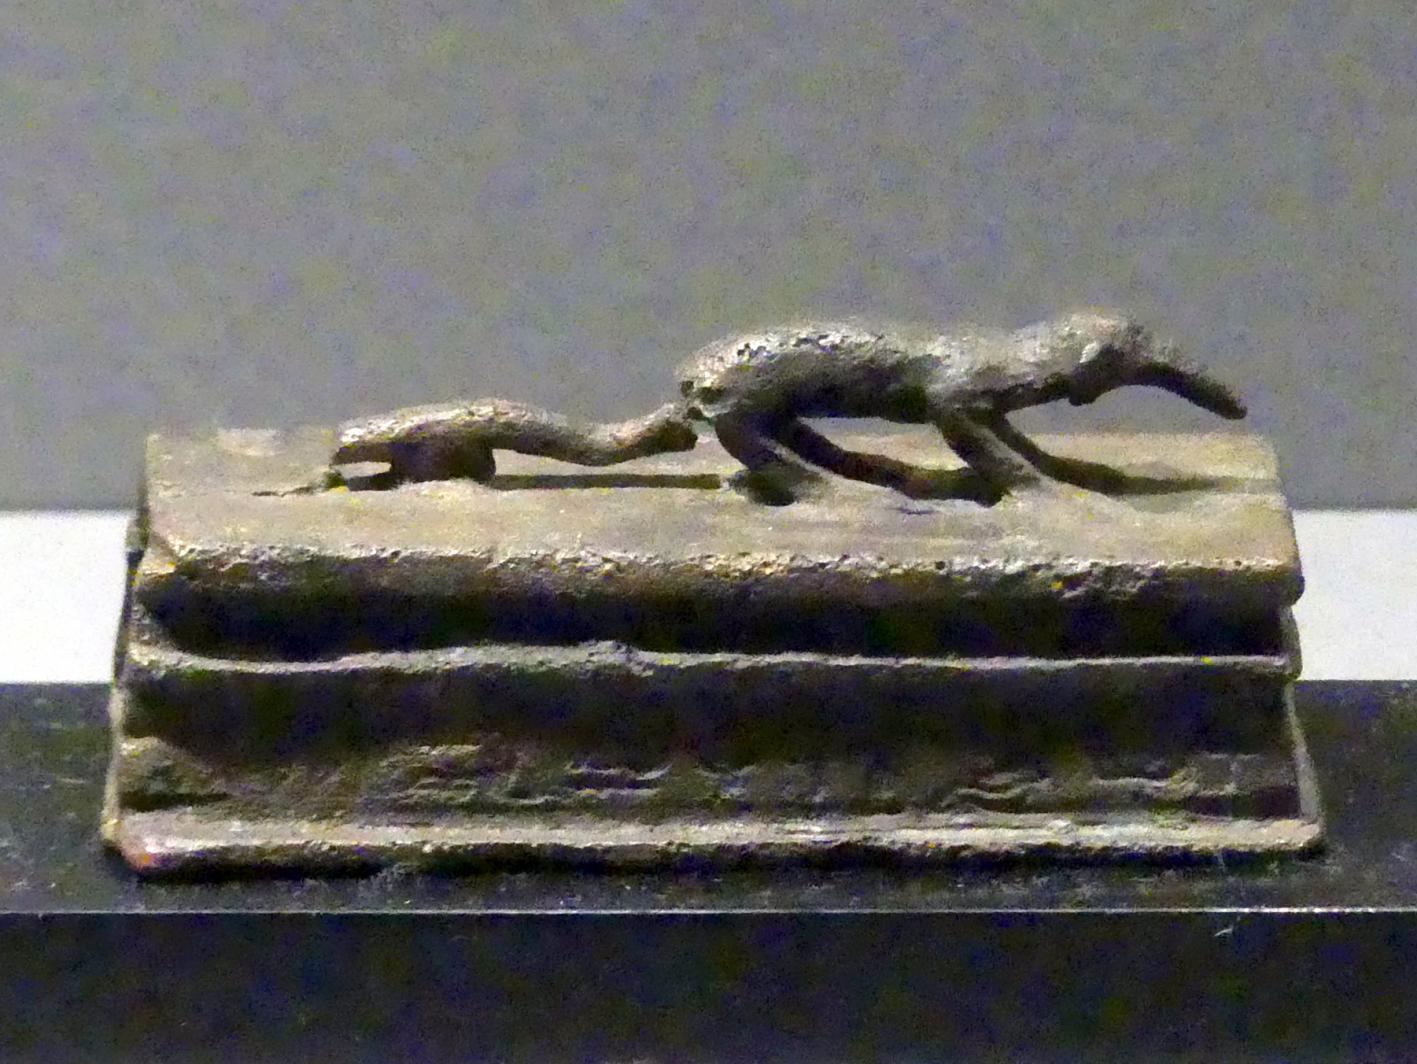 Figur einer Spitzmaus auf einem Kastensarg, Ptolemäische Zeit, 400 v. Chr. - 1 n. Chr., 300 - 1 v. Chr.